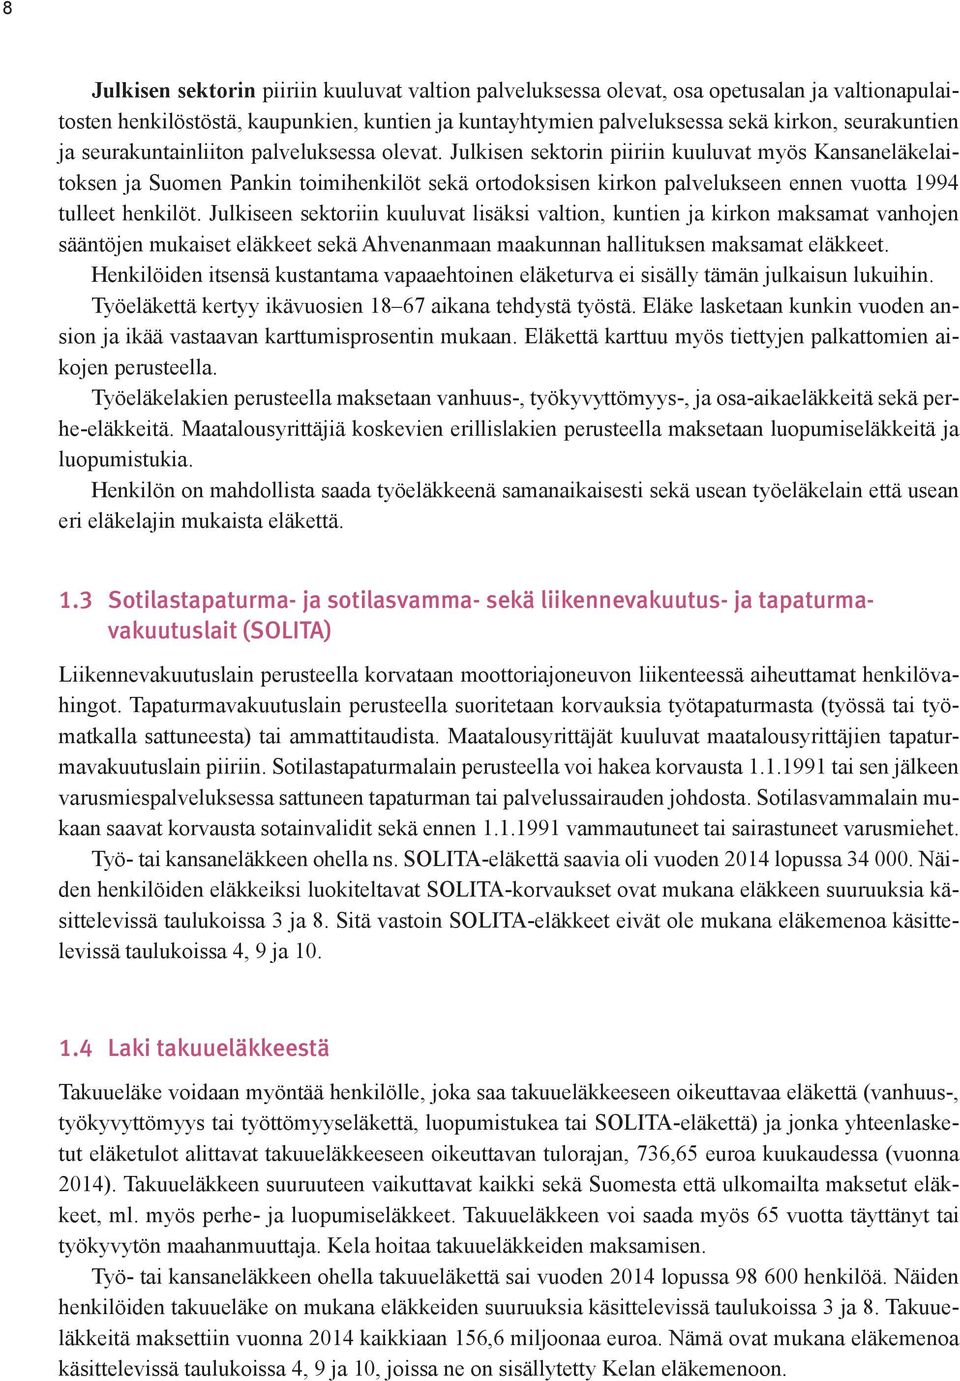 Julkisen sektorin piiriin kuuluvat myös Kansaneläkelaitoksen ja Suomen Pankin toimihenkilöt sekä ortodoksisen kirkon palvelukseen ennen vuotta 1994 tulleet henkilöt.